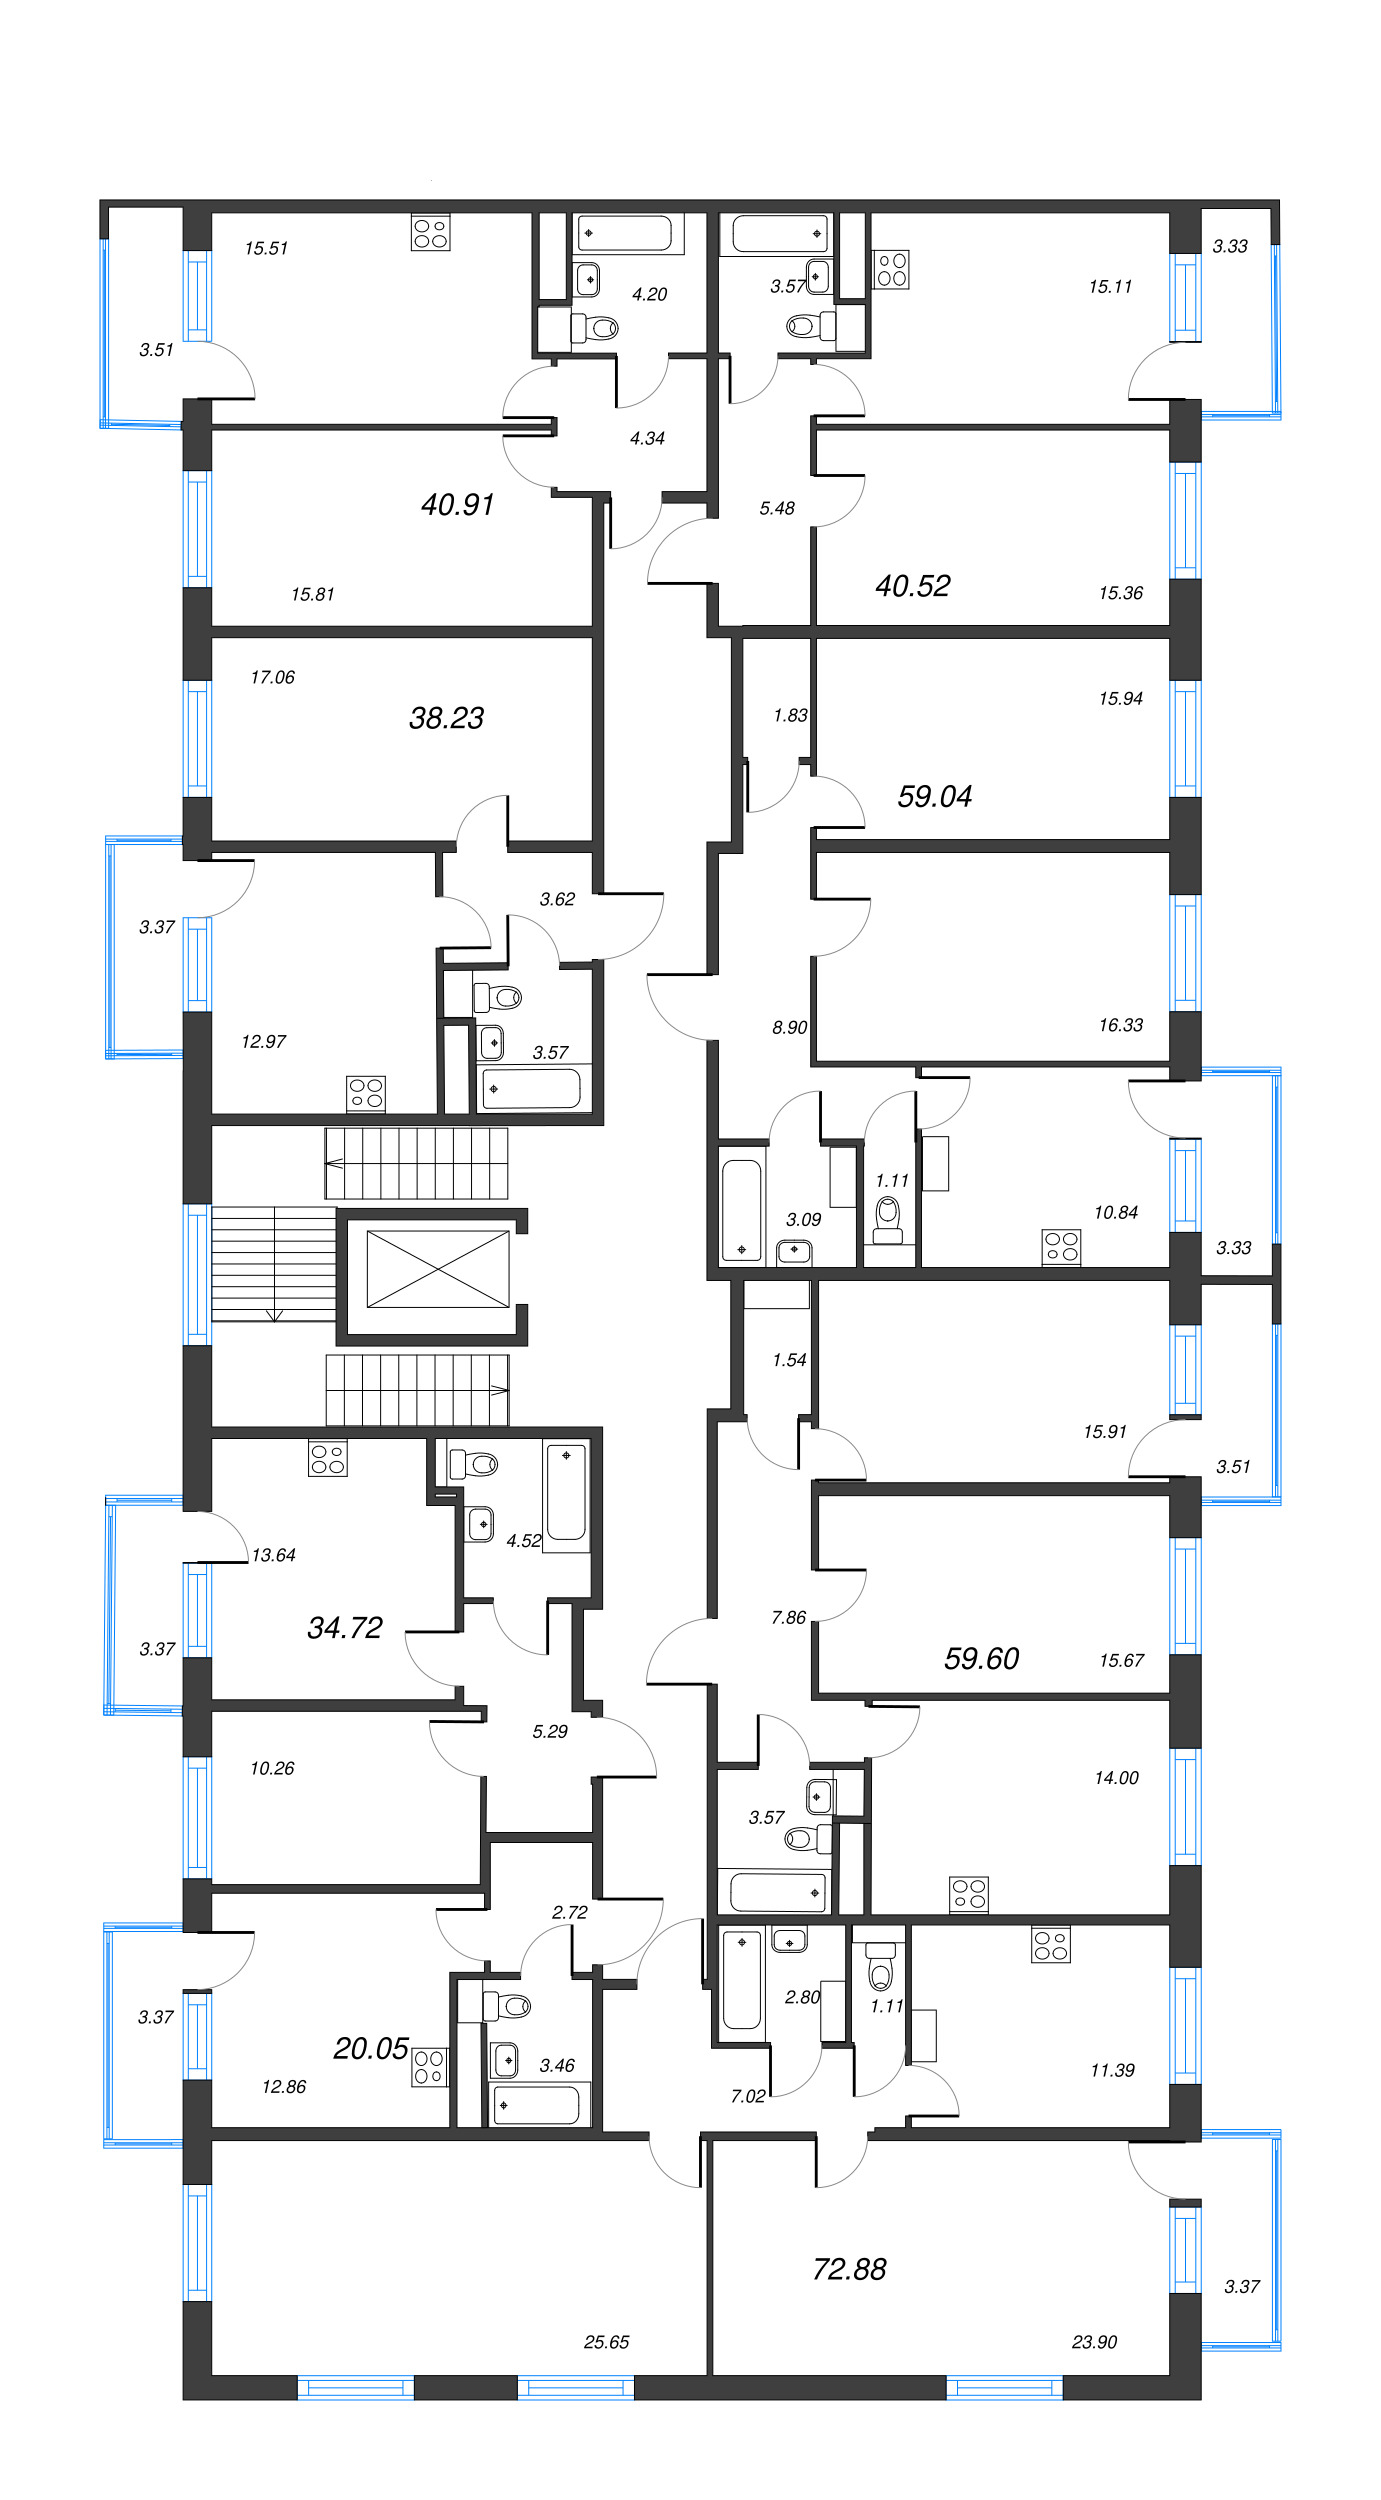 1-комнатная квартира, 37.08 м² - планировка этажа